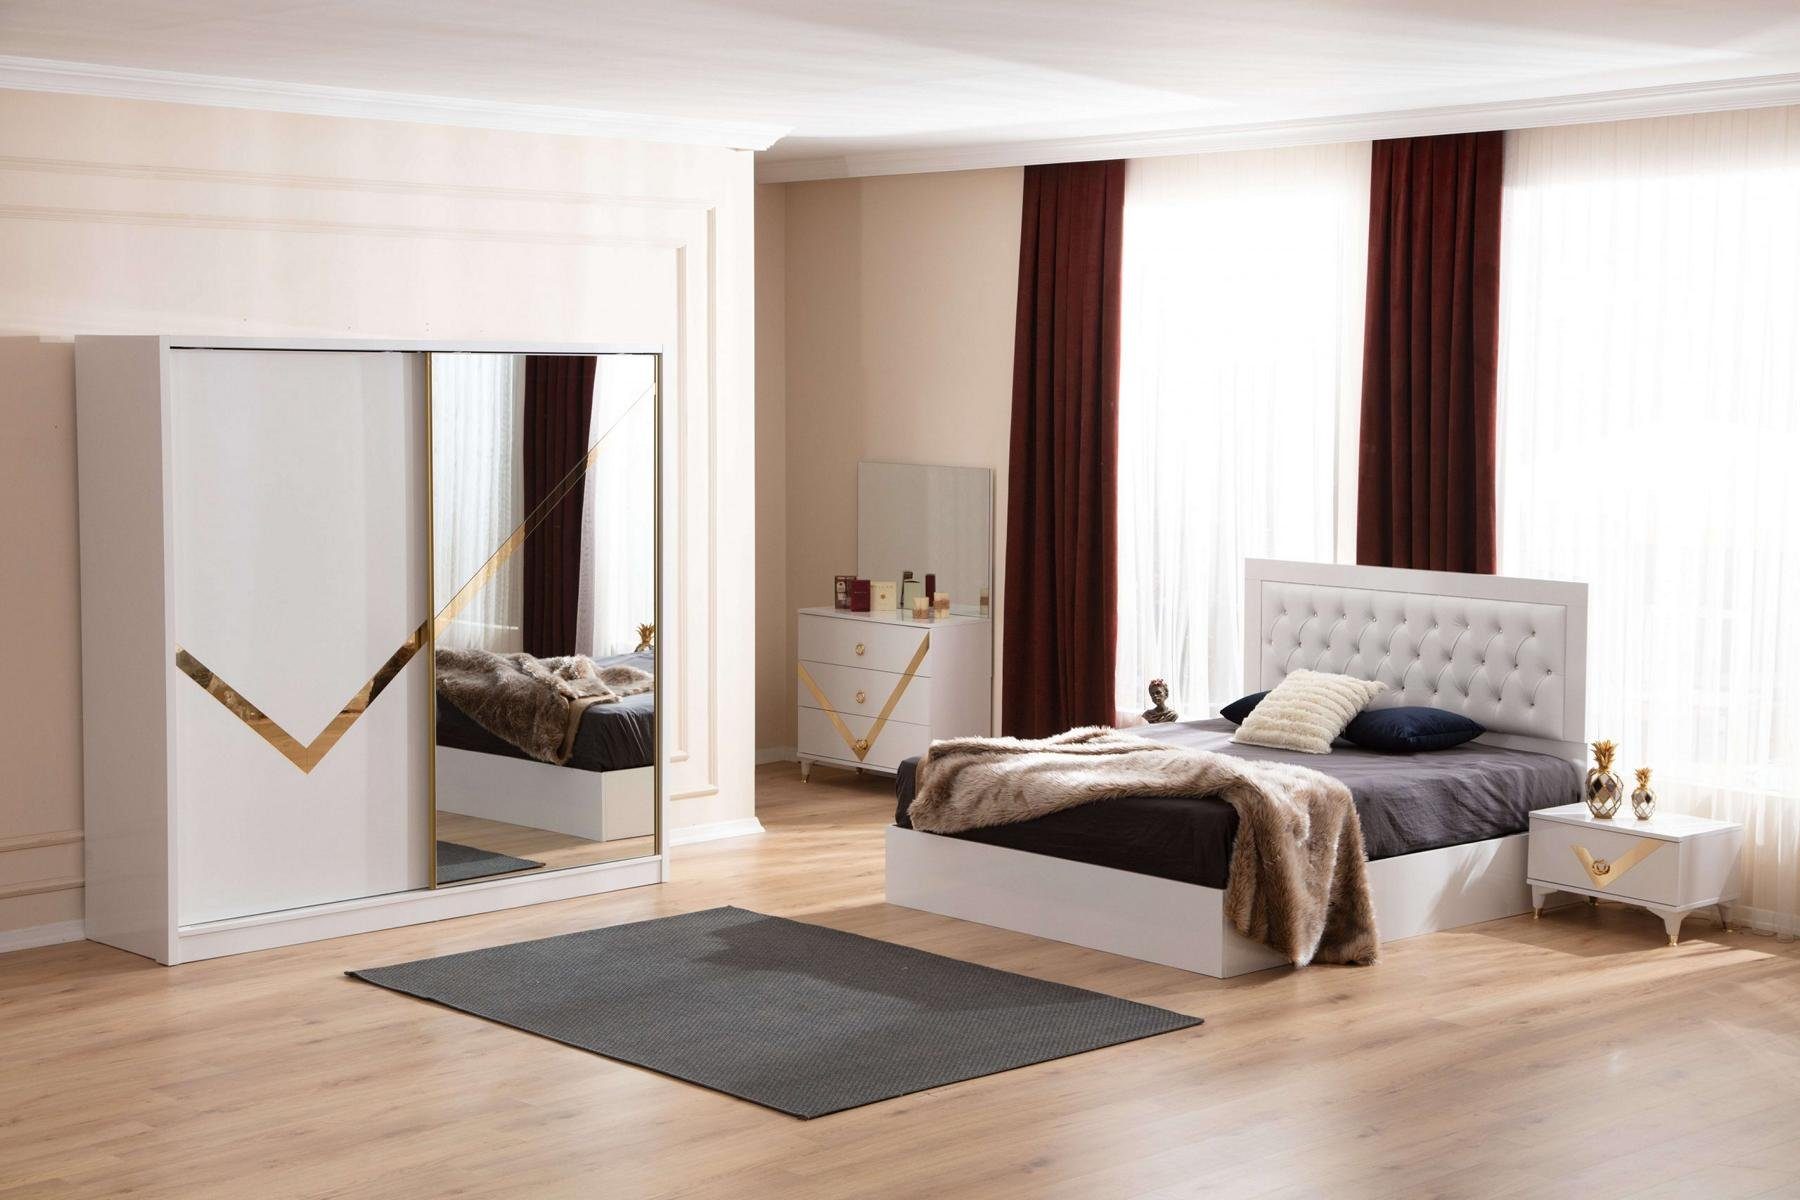 JVmoebel Schlafzimmer-Set Weißes Set Schlafzimmer Möbel Chesterfield Bett 2x Nachttische Schrank, Made In Europe